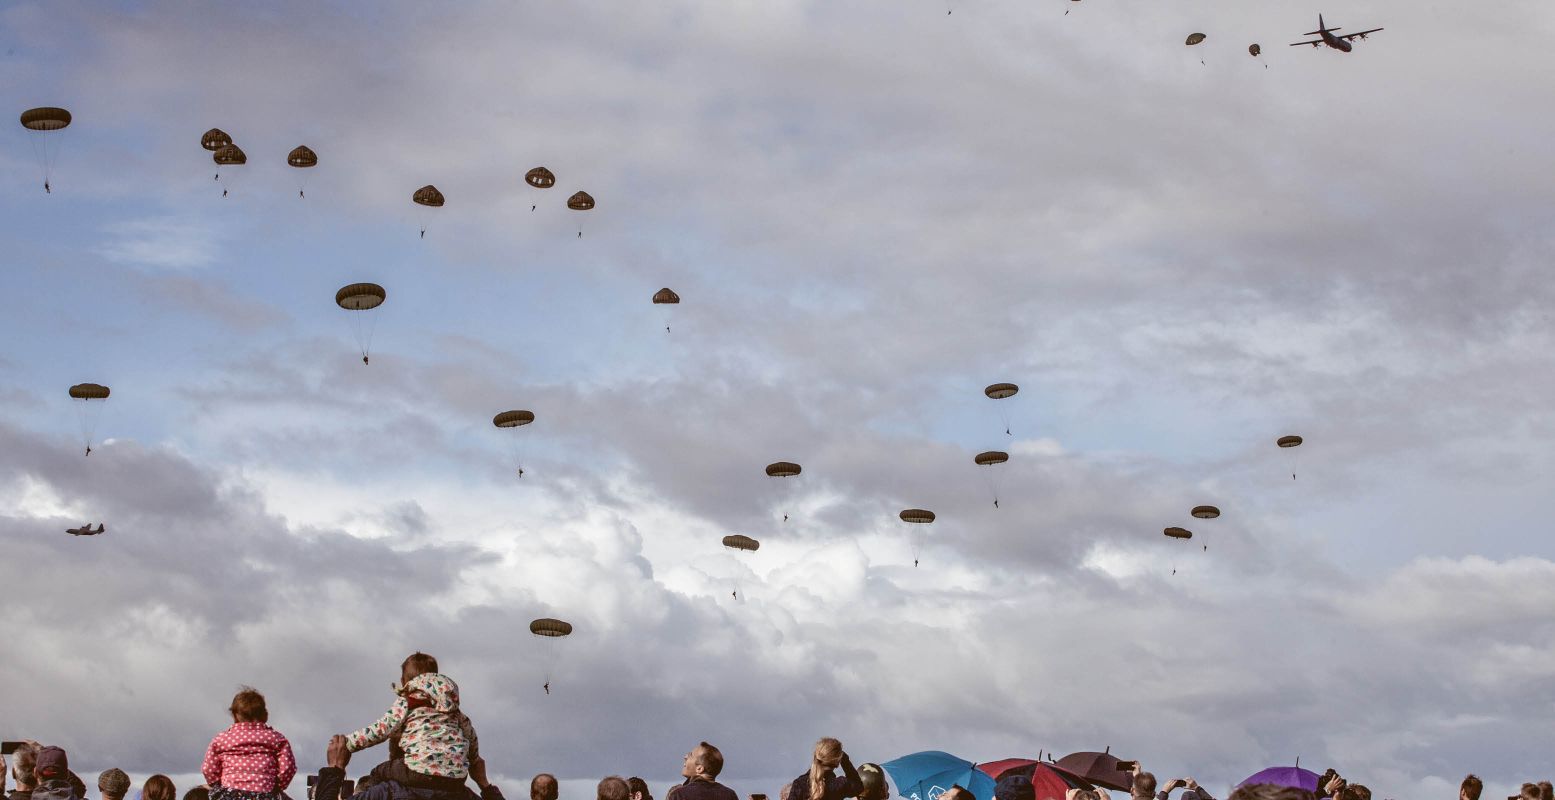 Honderden parachutisten worden gedropt tijdens de Massdrop. Foto: Maarten Weij